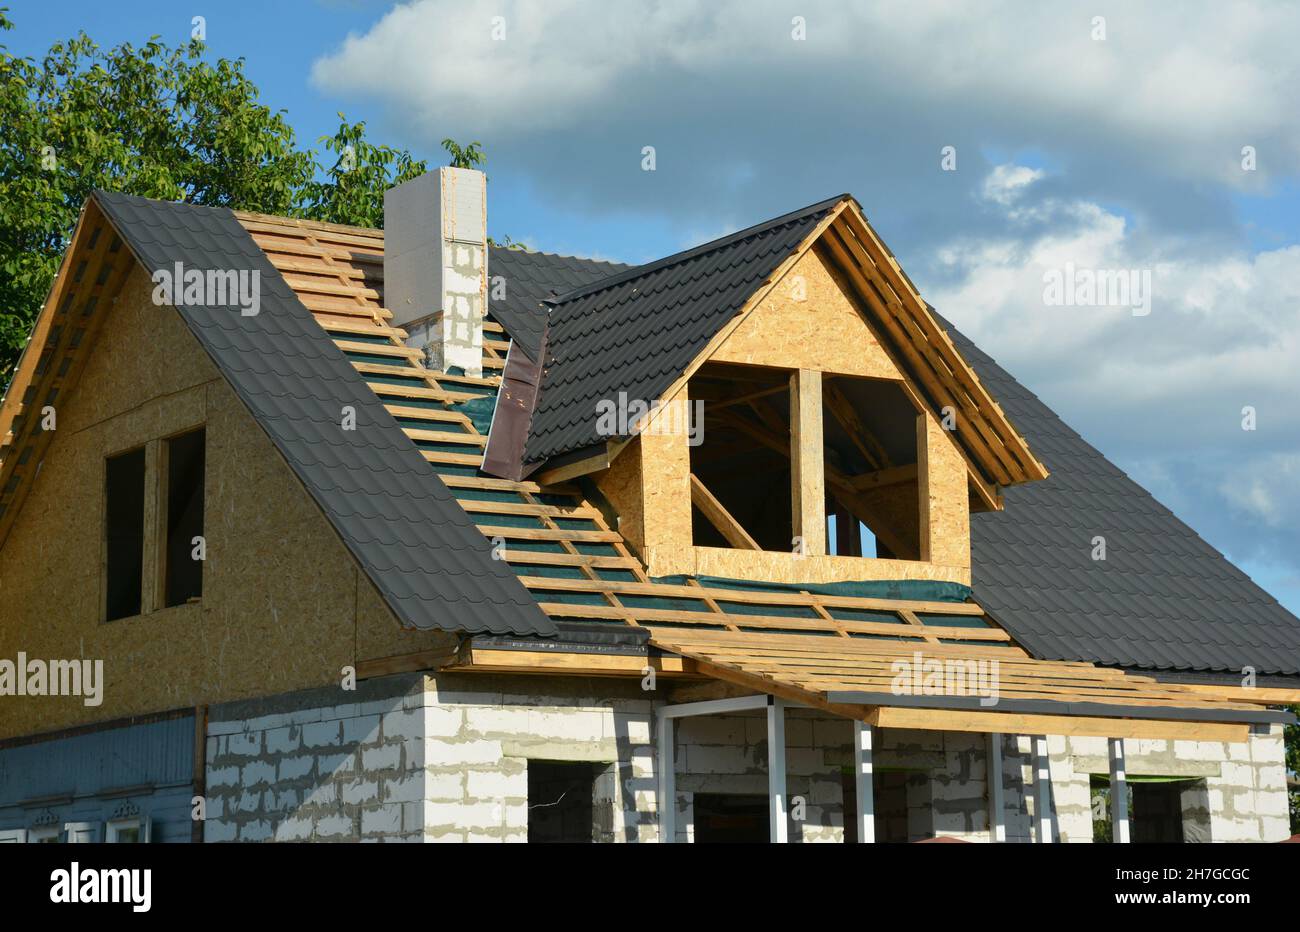 Dachkonstruktion im Dachgeschoss. Eine Nahaufnahme eines Holzdachs, das über einer Dampfsperre und einer Metalldachziegel-Installation rahmte, Dachfenster, Schornsteinkonstruktion Stockfoto